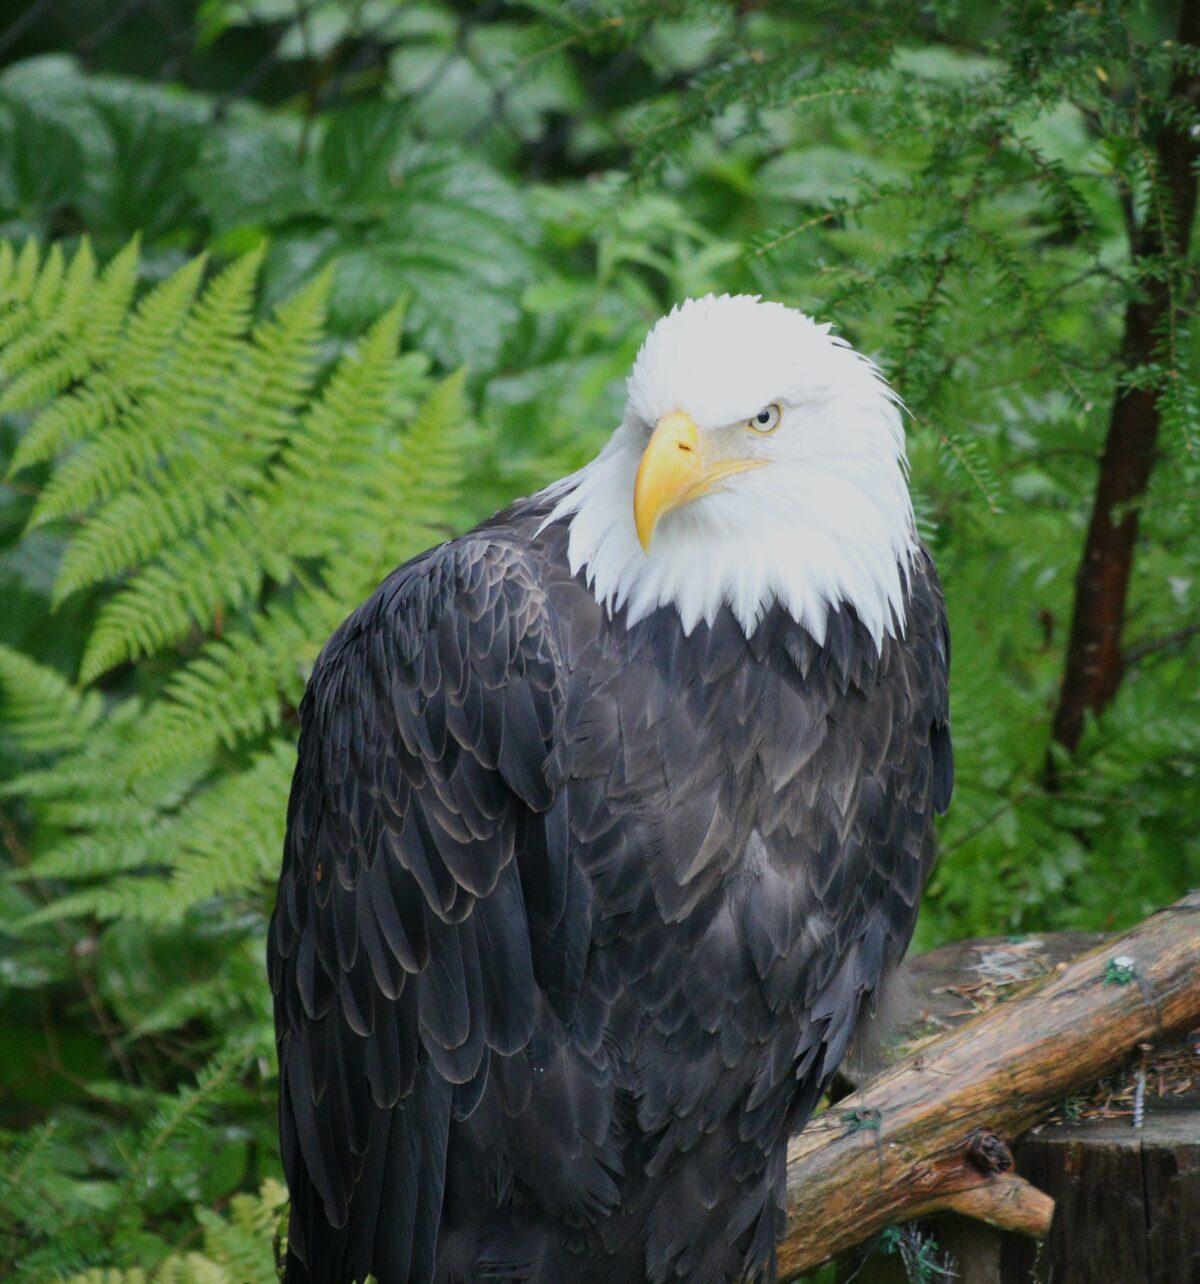 A bald eagle at the Alaska Raptor Center. (George Karelitsky/Unsplash)